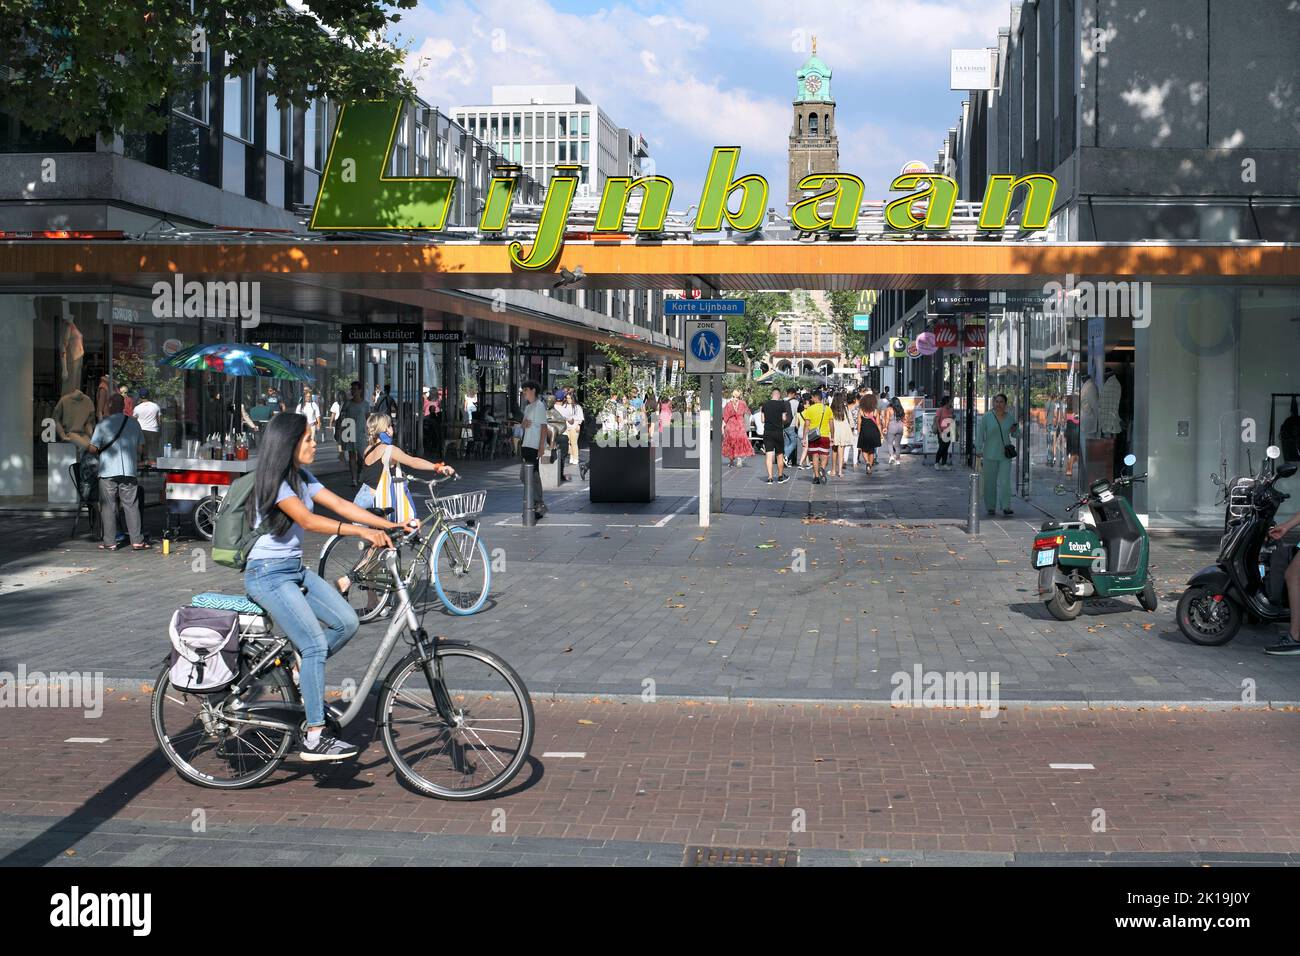 Fahrradweg neben dem Einkaufsviertel Lijnbaan in Rotterdam, Niederlande. (Blick auf den Uhrenturm des Rotterdamer Rathauses.) Stockfoto